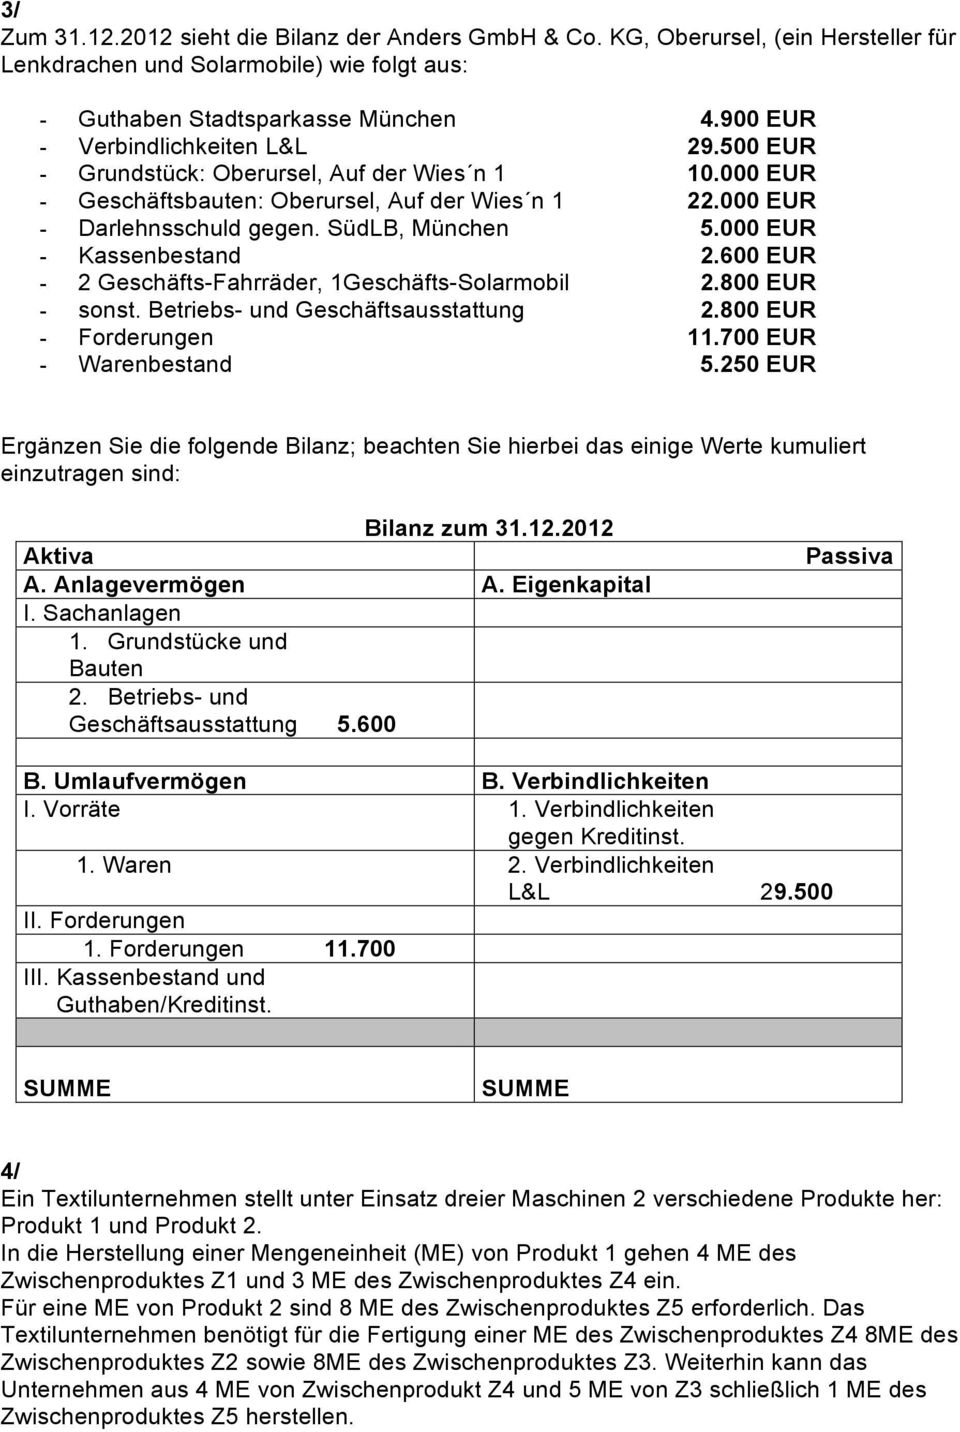 000 EUR - Kassenbestand 2.600 EUR - 2 Geschäfts-Fahrräder, 1Geschäfts-Solarmobil 2.800 EUR - sonst. Betriebs- und Geschäftsausstattung 2.800 EUR - Forderungen 11.700 EUR - Warenbestand 5.